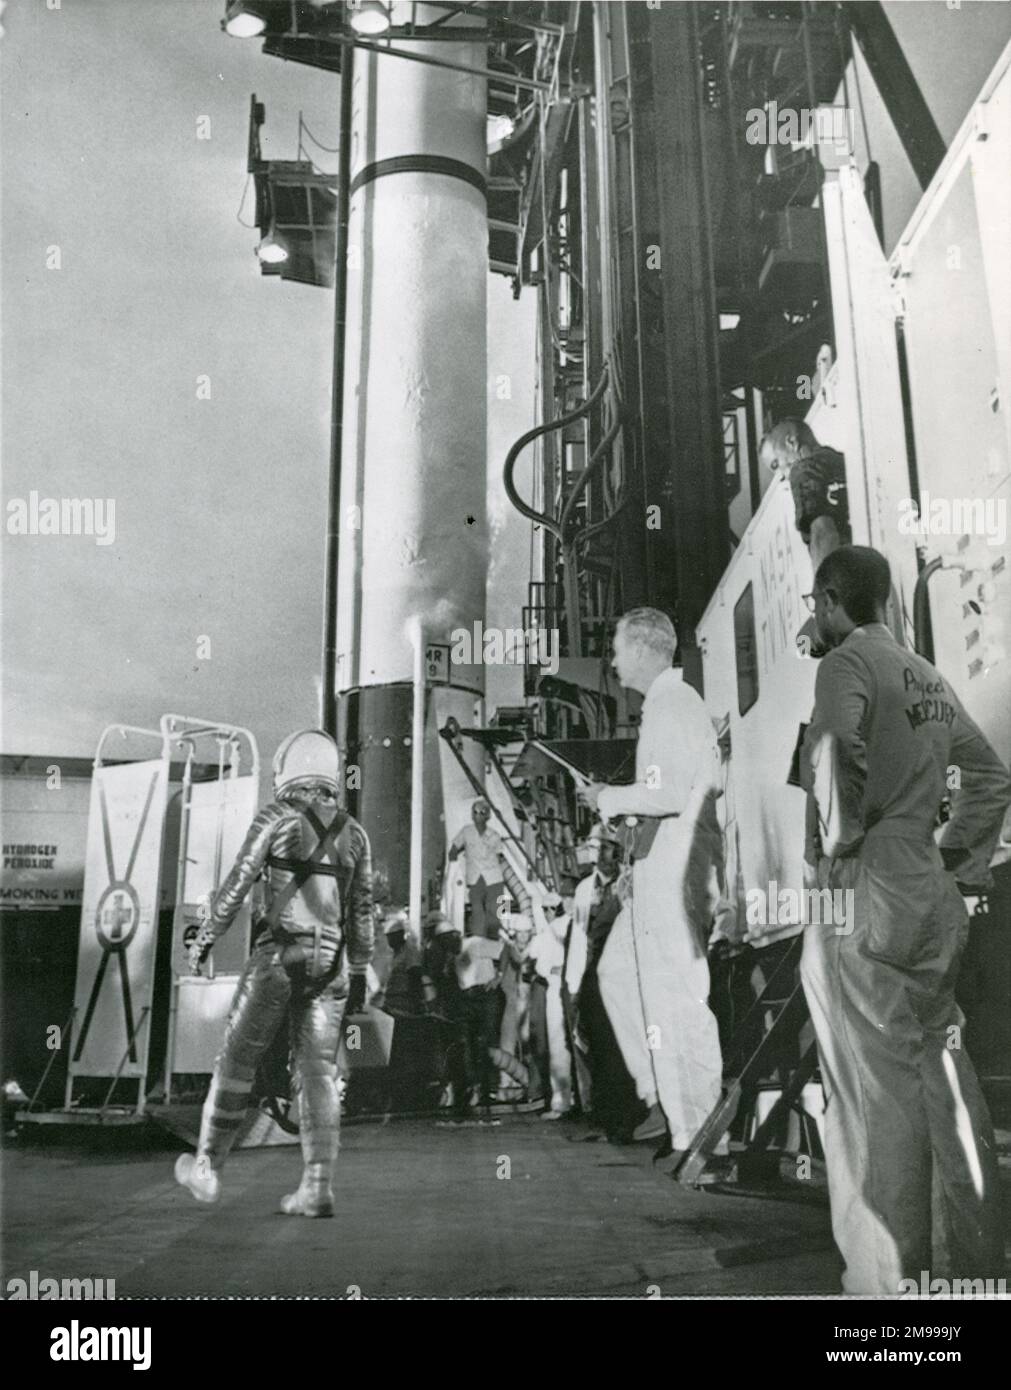 Astronaute Virgil ?Gus ? Grissom approche sa fusée Redstone à Cape Canaveral avant son vol retardé qui a été annulé en raison de mauvais temps, le 19 juillet 1961. Banque D'Images